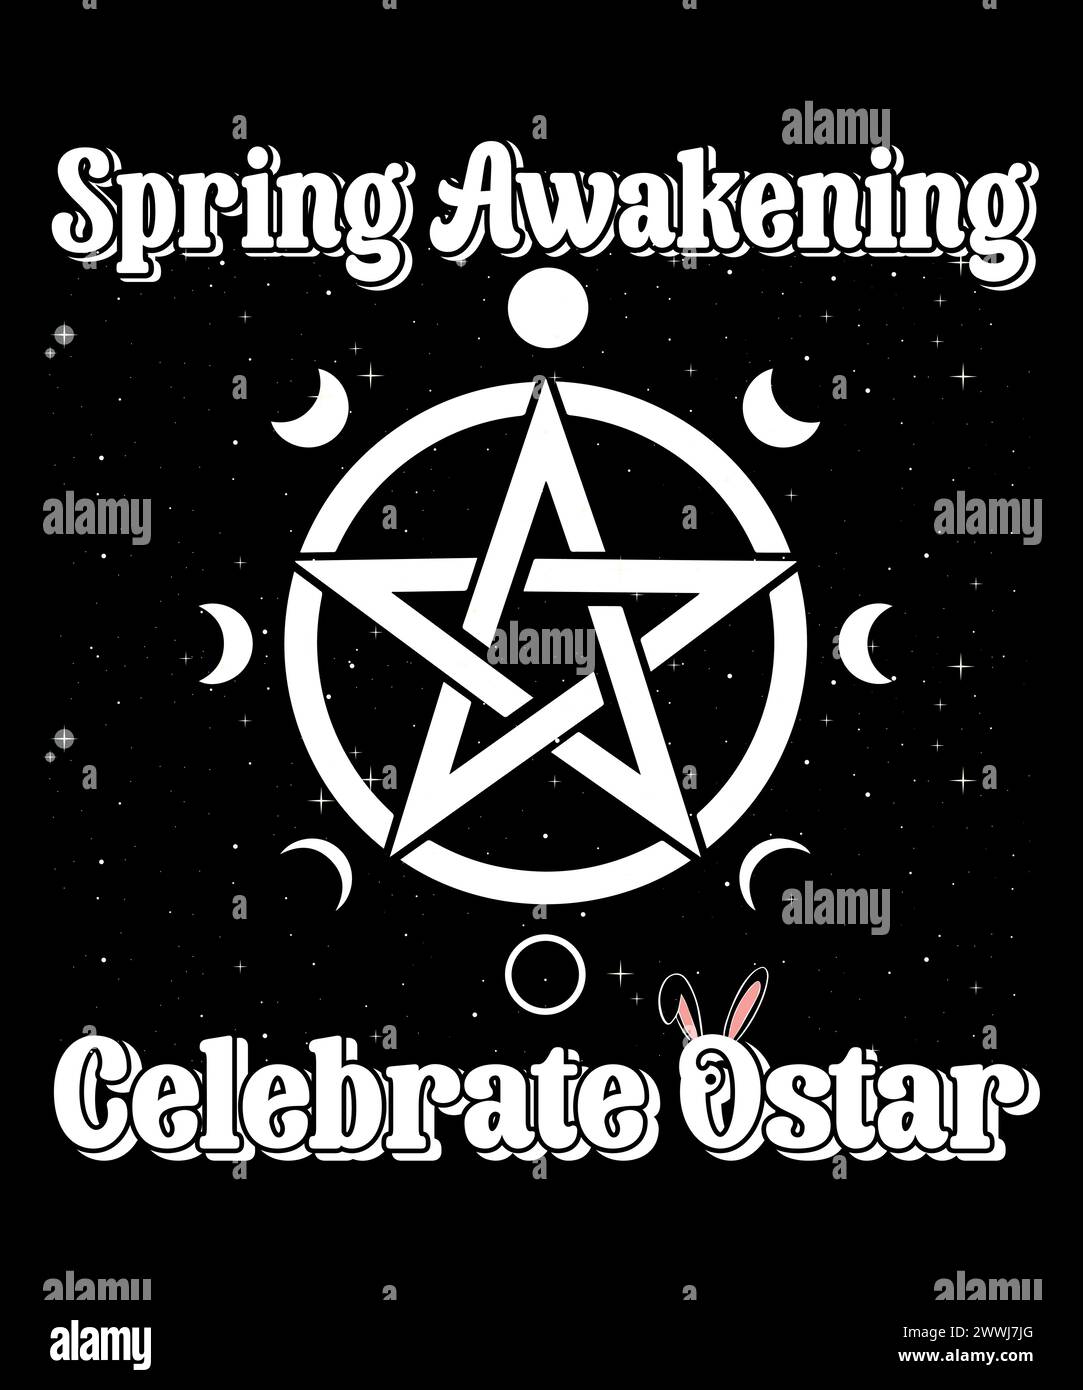 Equinox de printemps – divers motifs de t-shirt. Réveil printanier célébrez ostar. Illustration de Vecteur